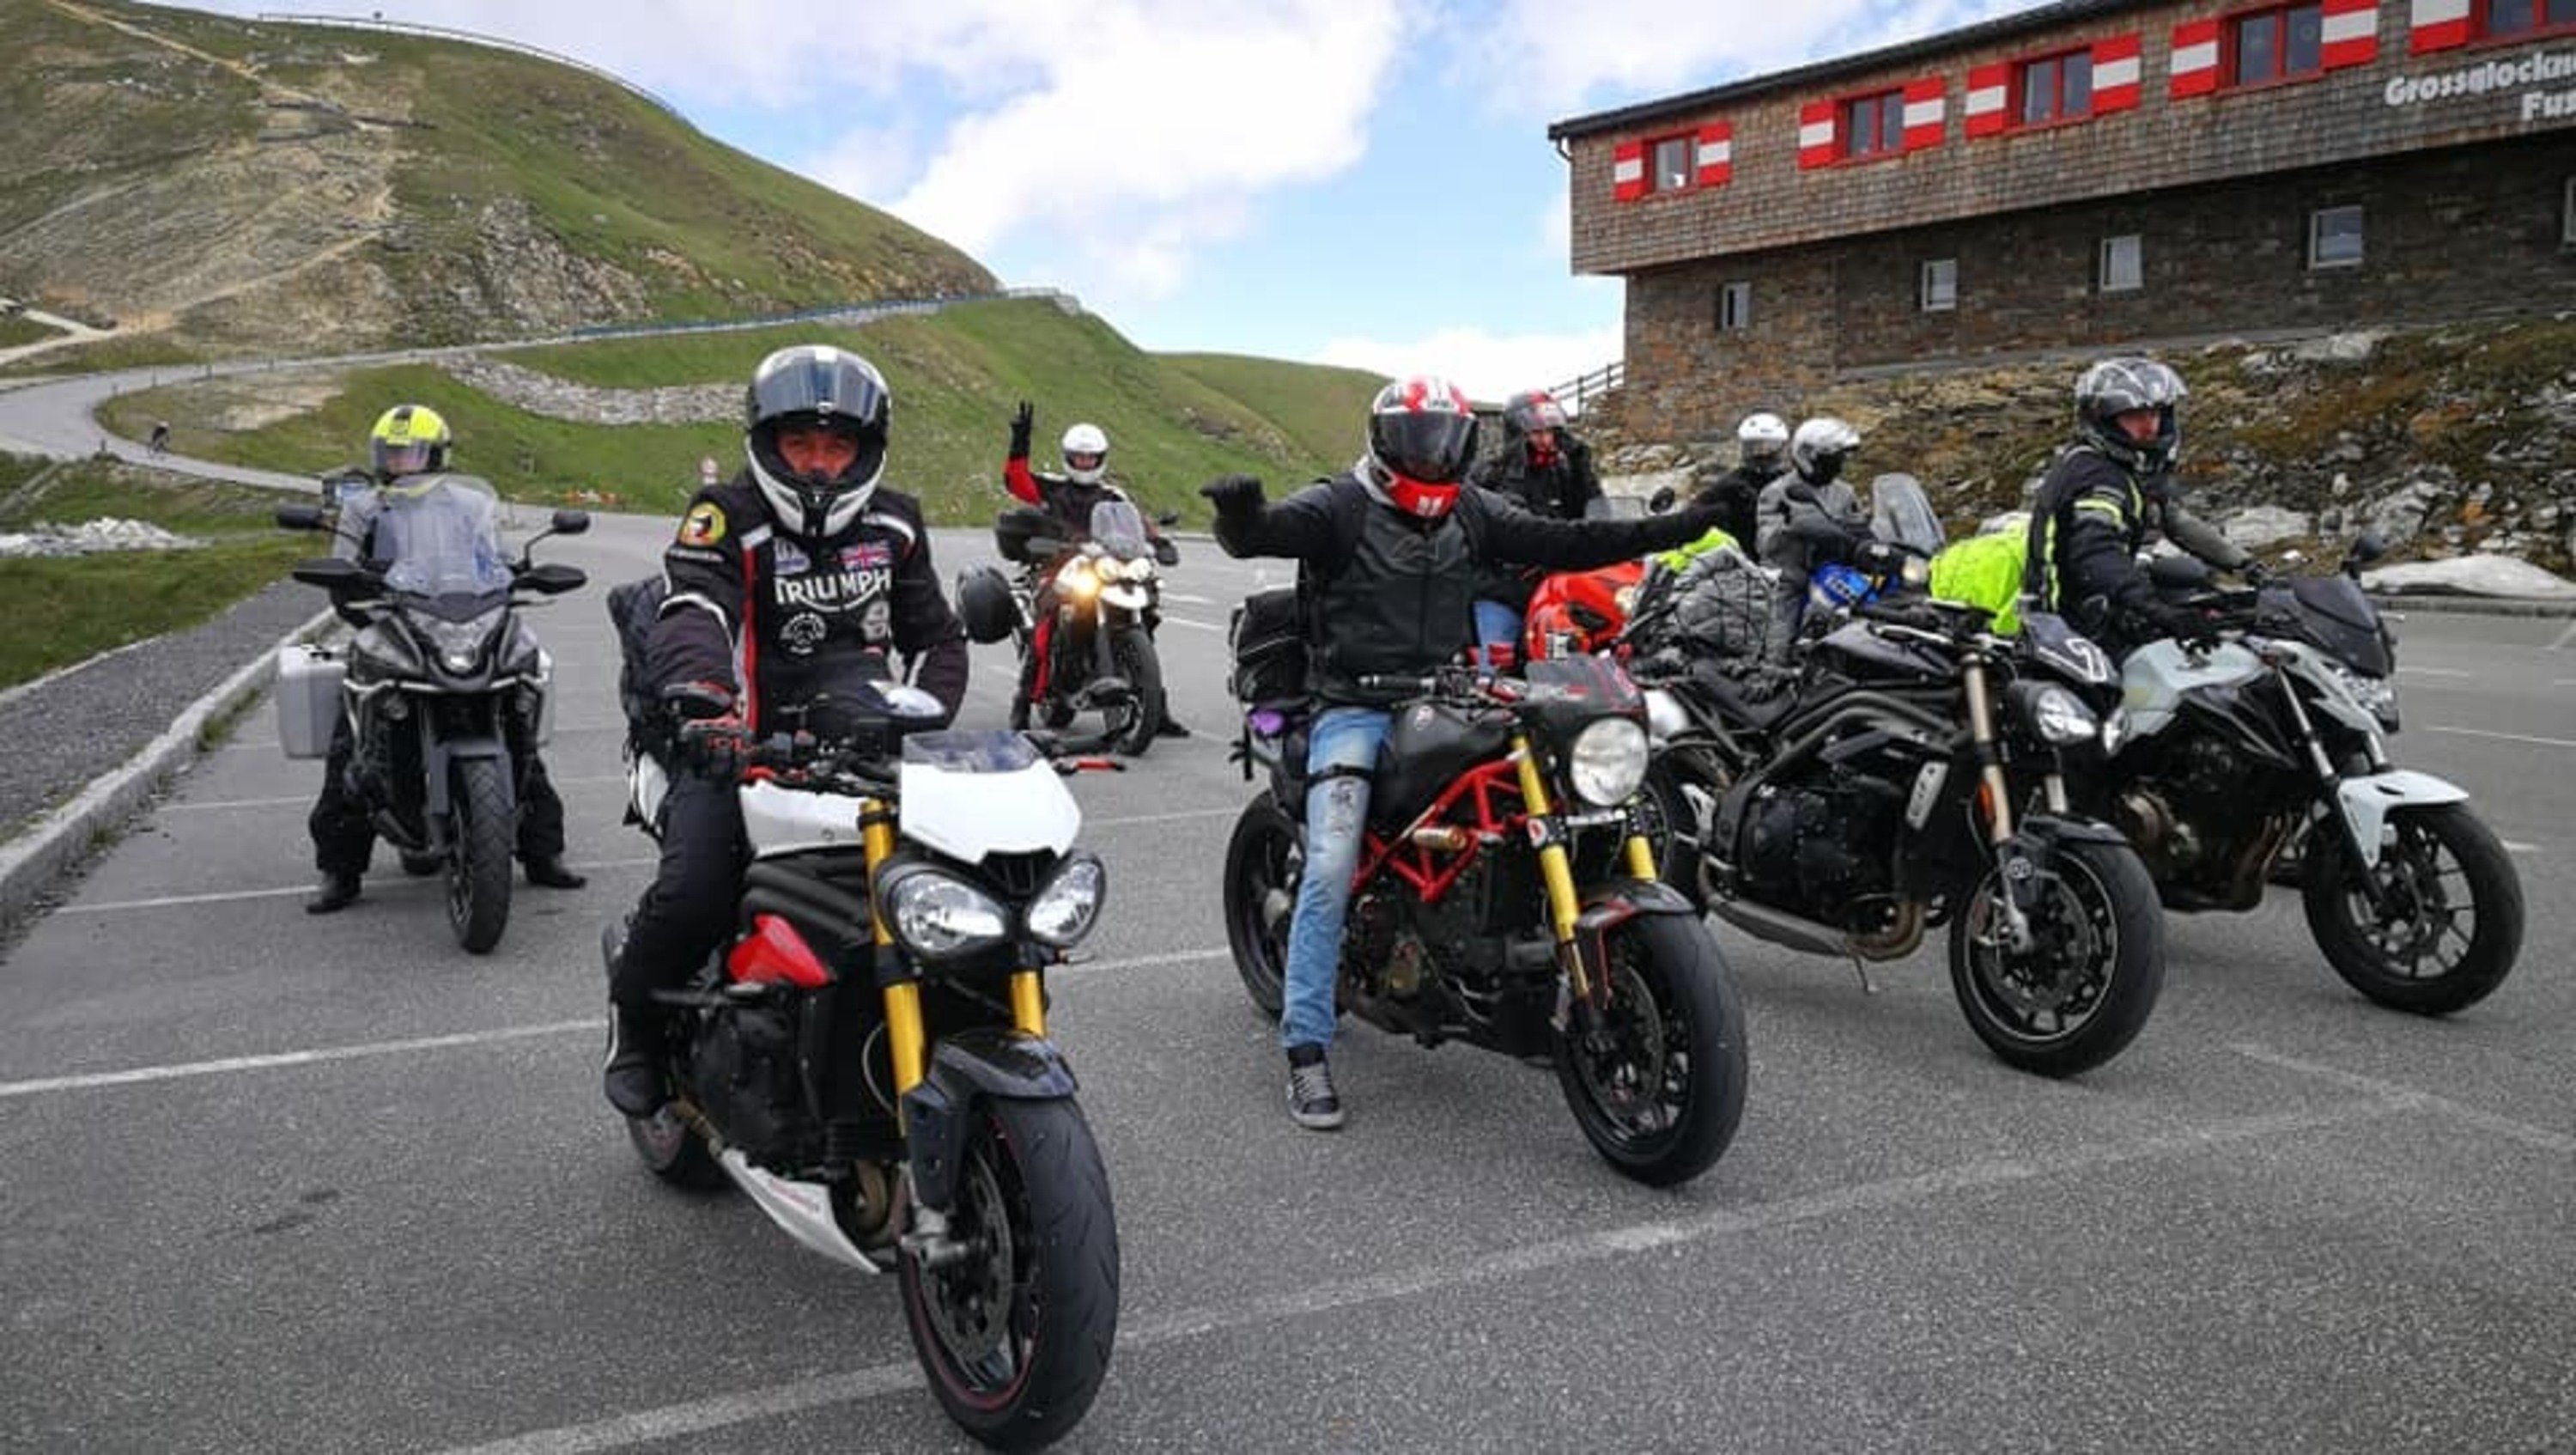 Club of Newchurch: continua a vivere a Neukirchen la passione delle moto, anche dopo il Tridays